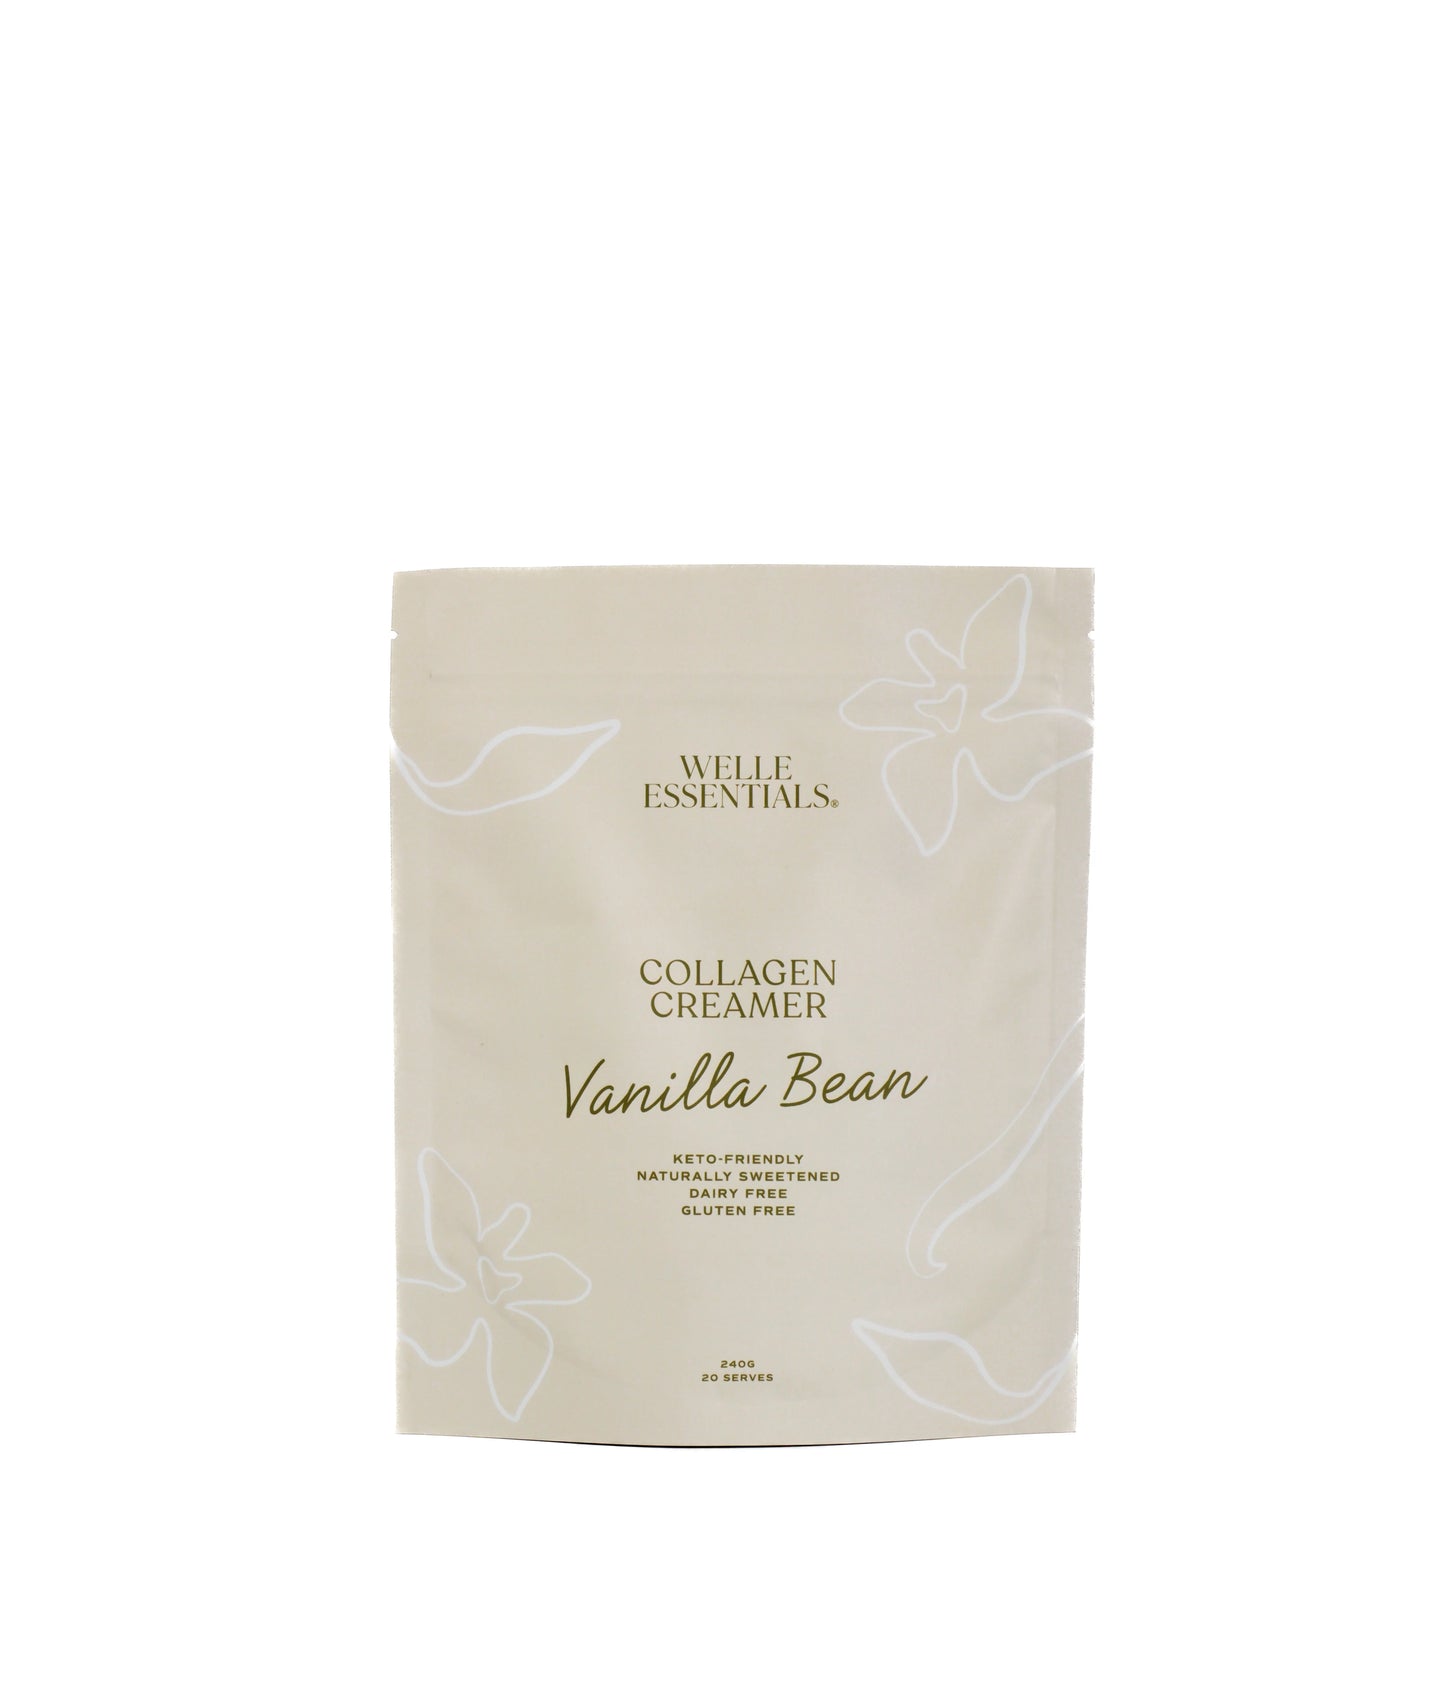 Welle Essentials Collagen Creamer Vanilla Bean